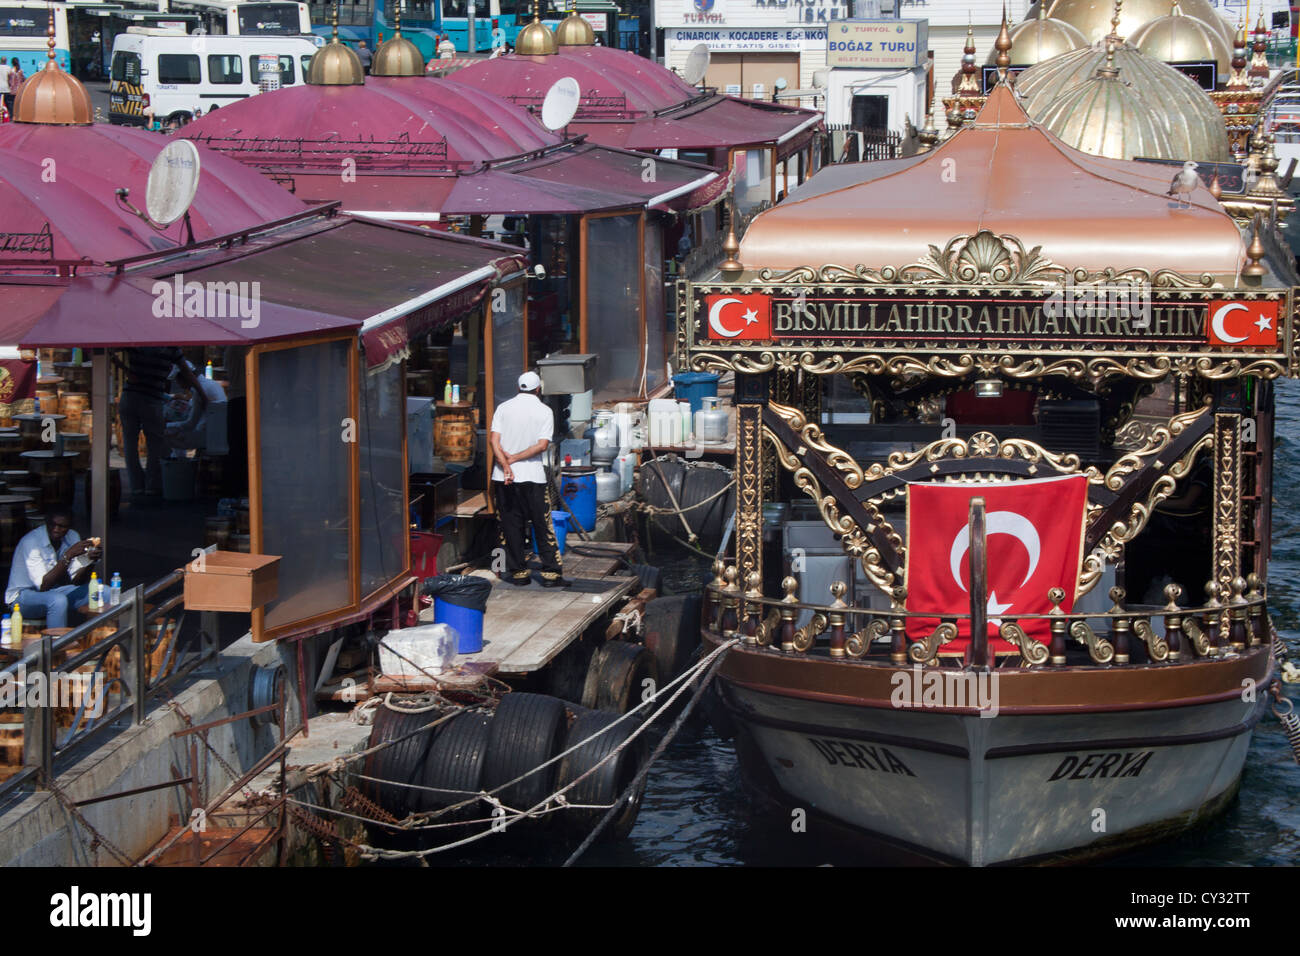 Ristorante di Istanbul Foto Stock